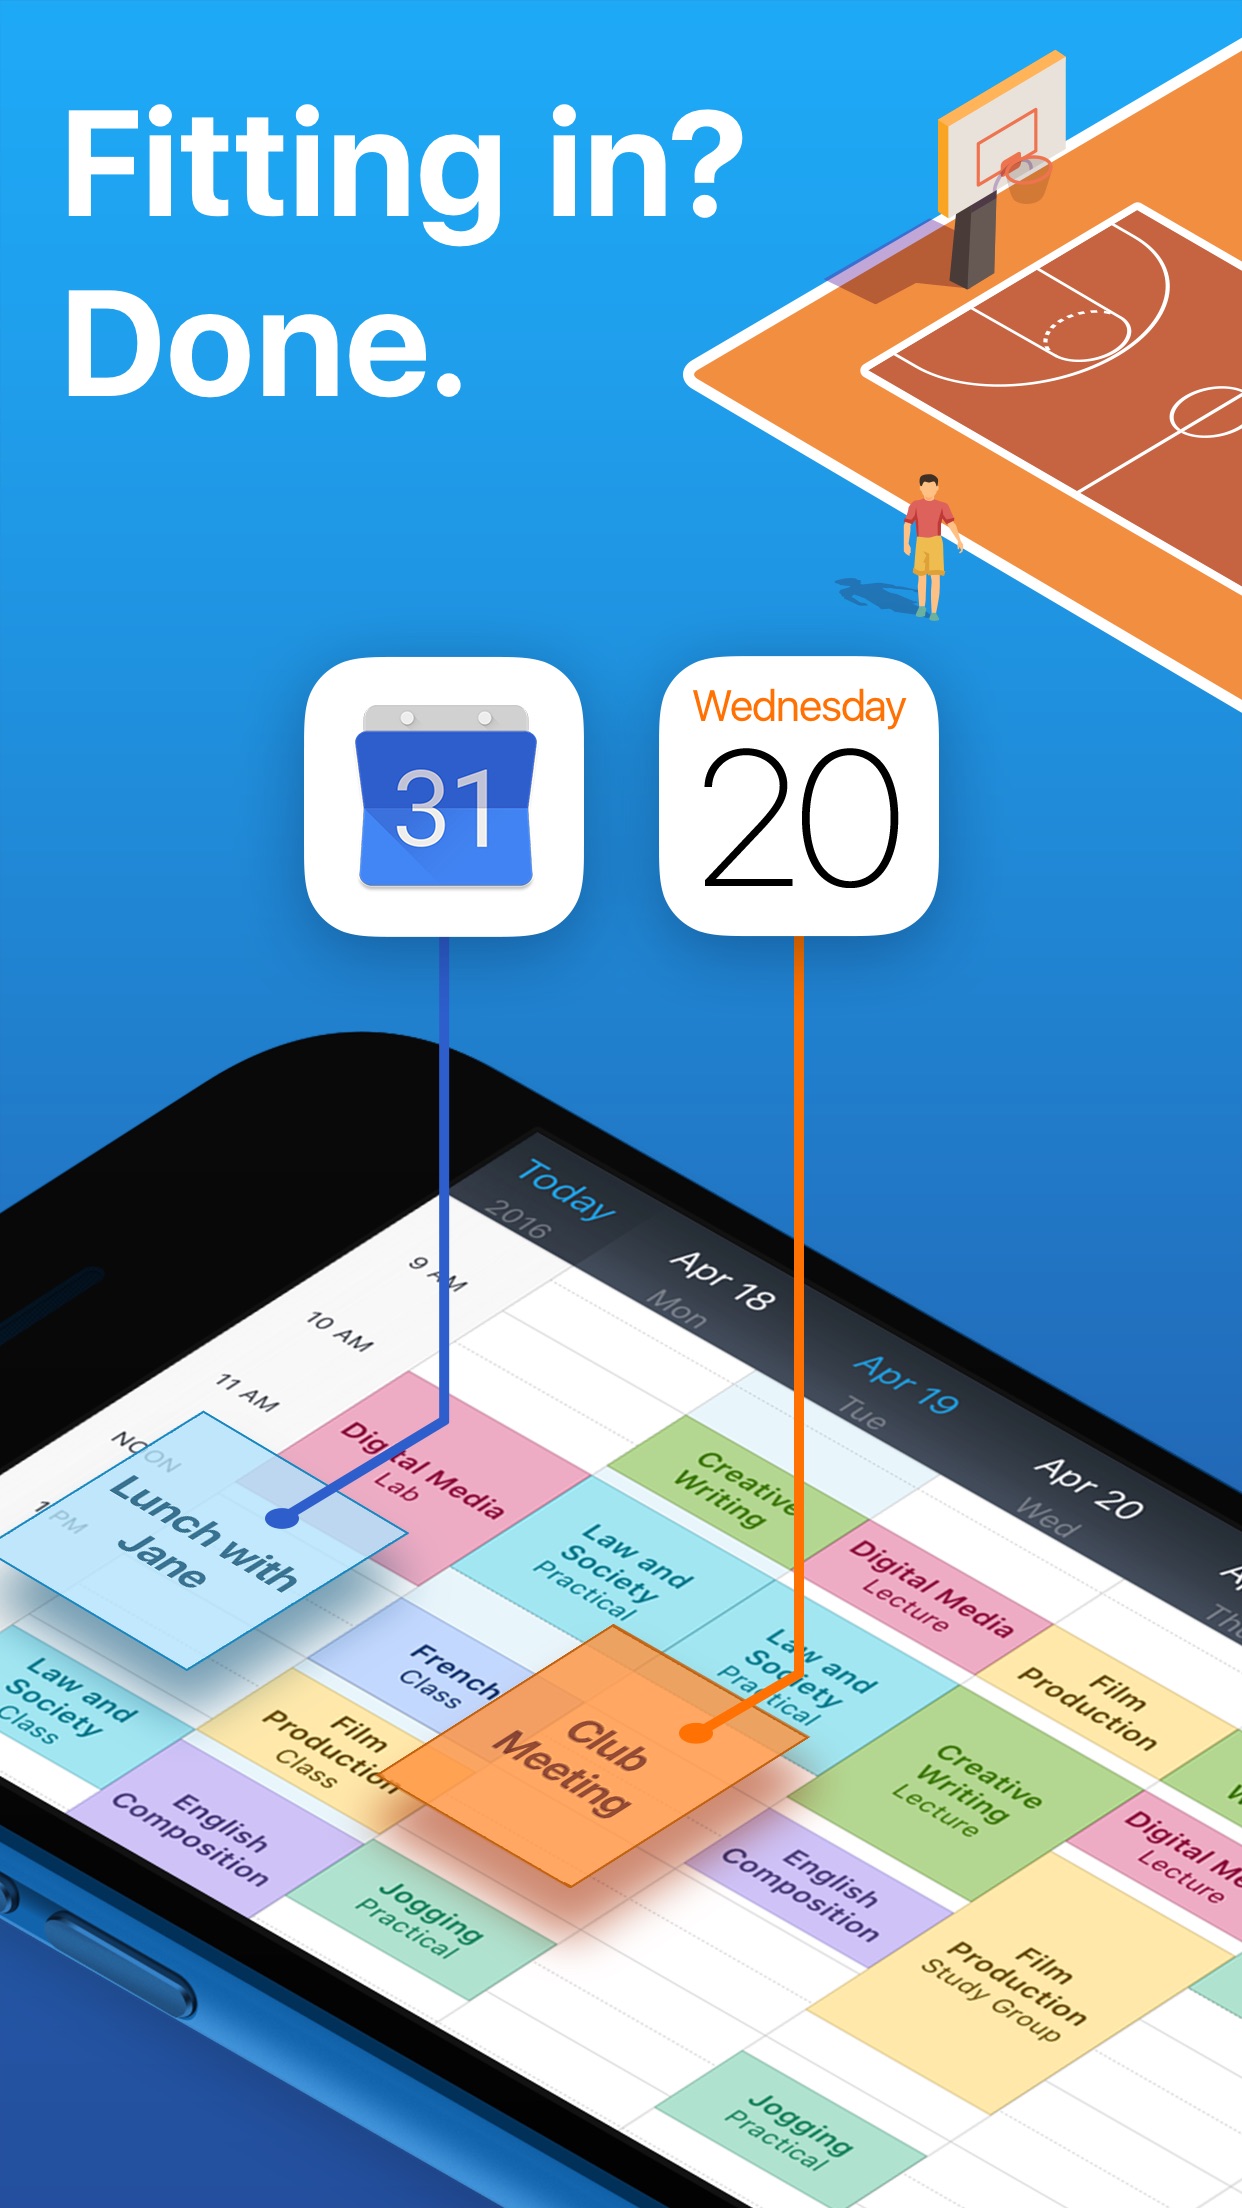 Screenshot do app iStudiez Pro – Student Planner